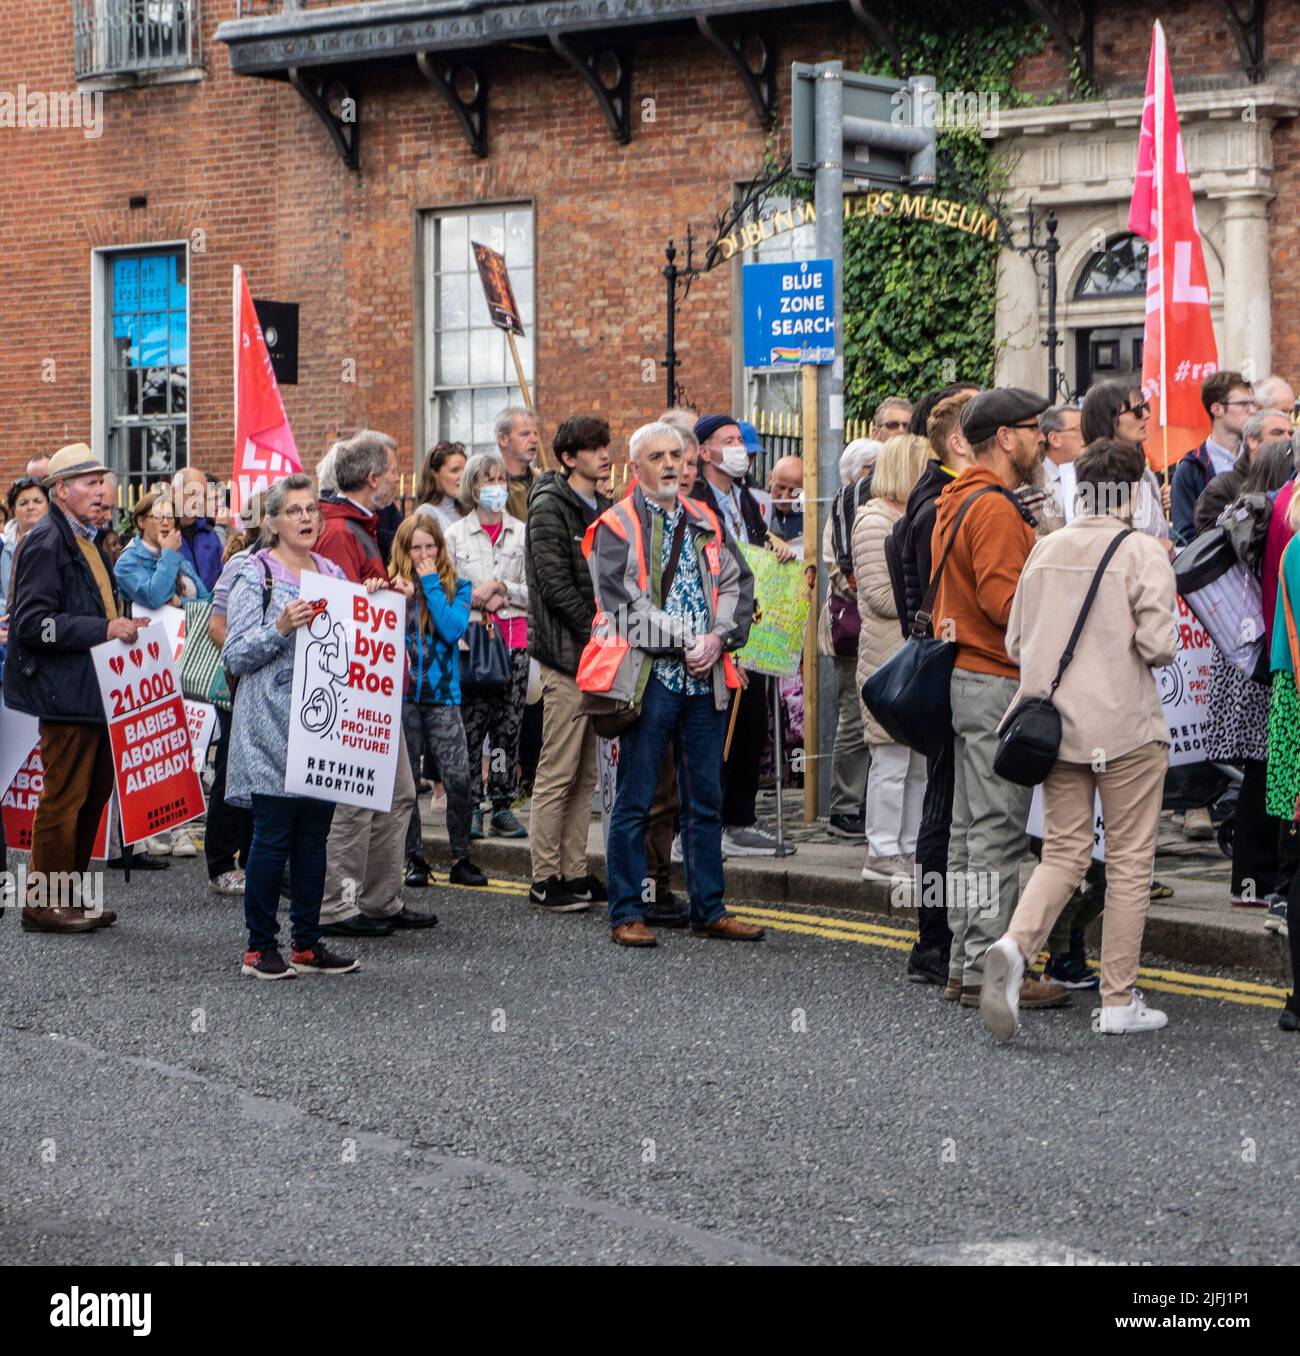 Un rallye pro LIFE à Parnell Square, en Irlande à Dublin. Une affiche fait référence à l’affaire Roe V Wade, récemment renversée par la Cour suprême des États-Unis. Banque D'Images